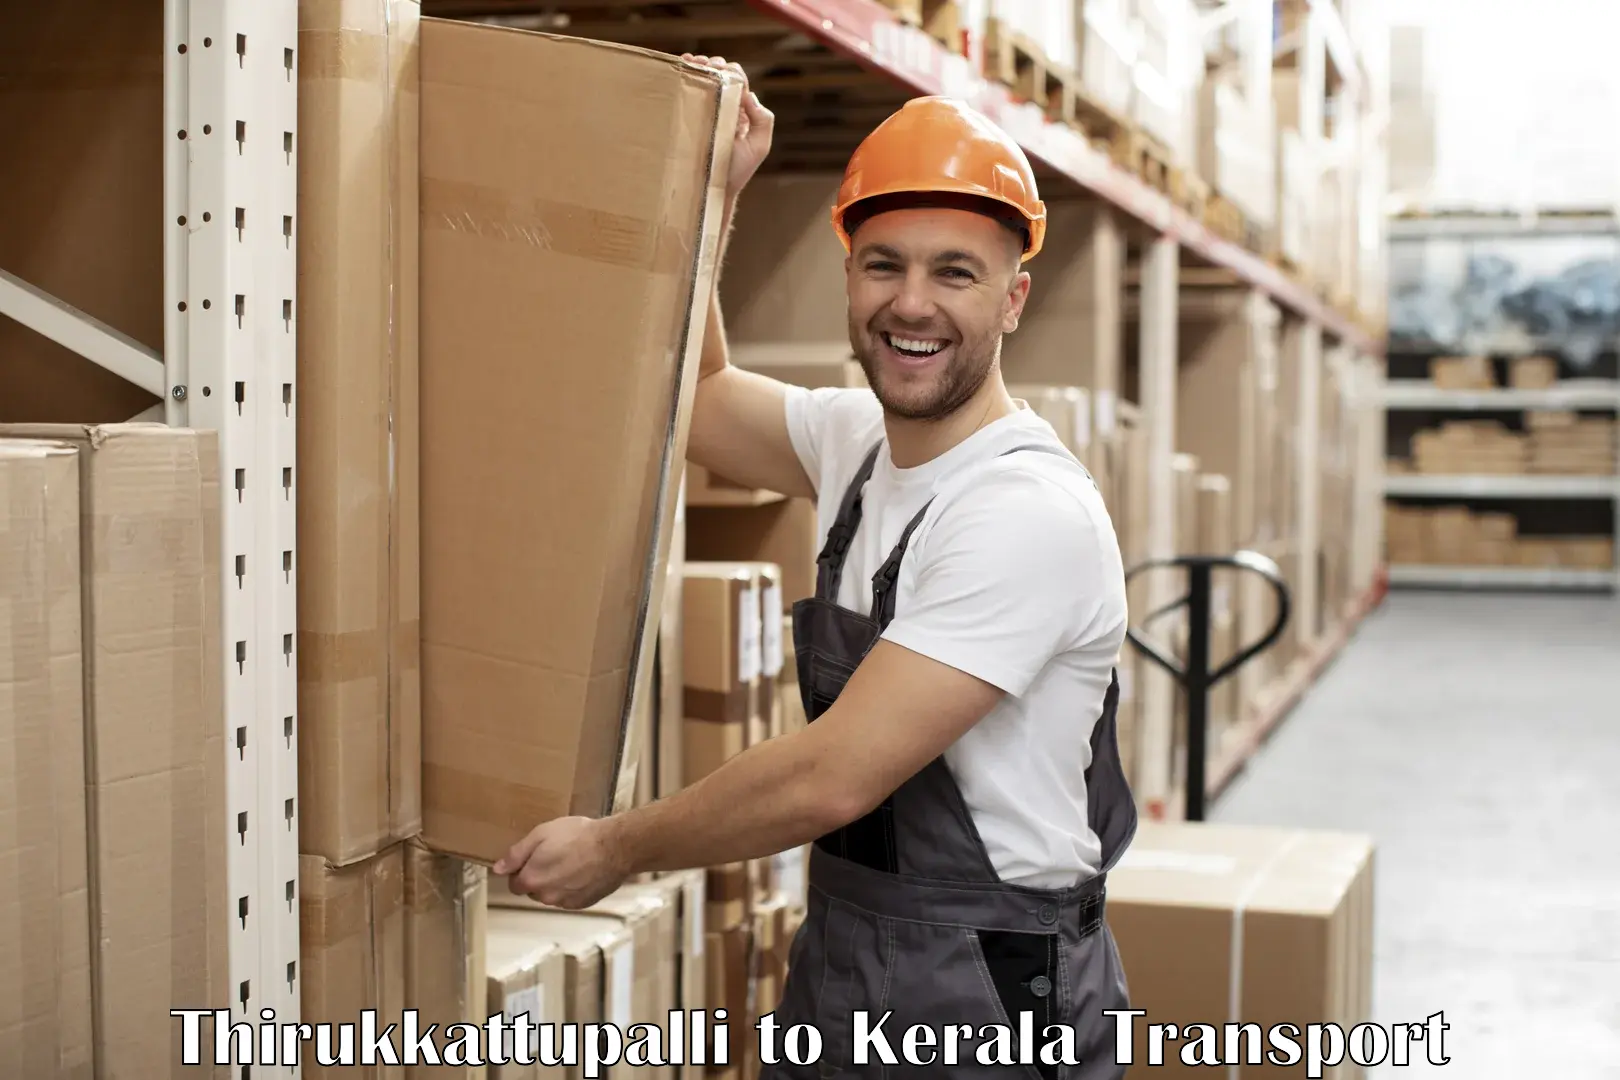 Road transport services Thirukkattupalli to Kalluvathukkal